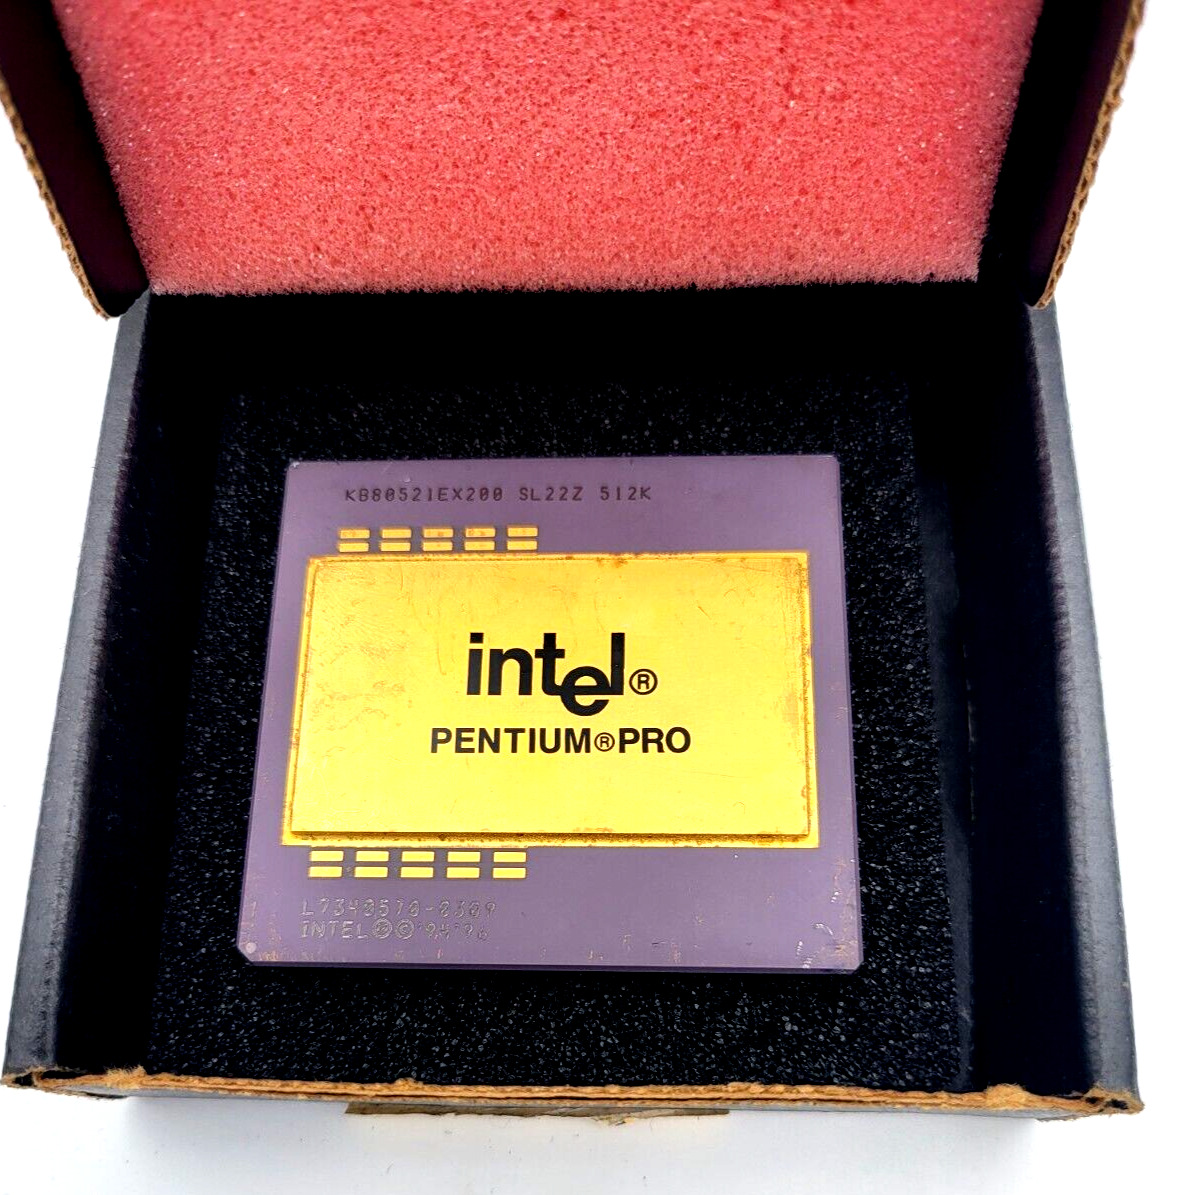 Intel Pentium Pro 200 KB80521EX200 512K (512KB L2) CPU SL22Z